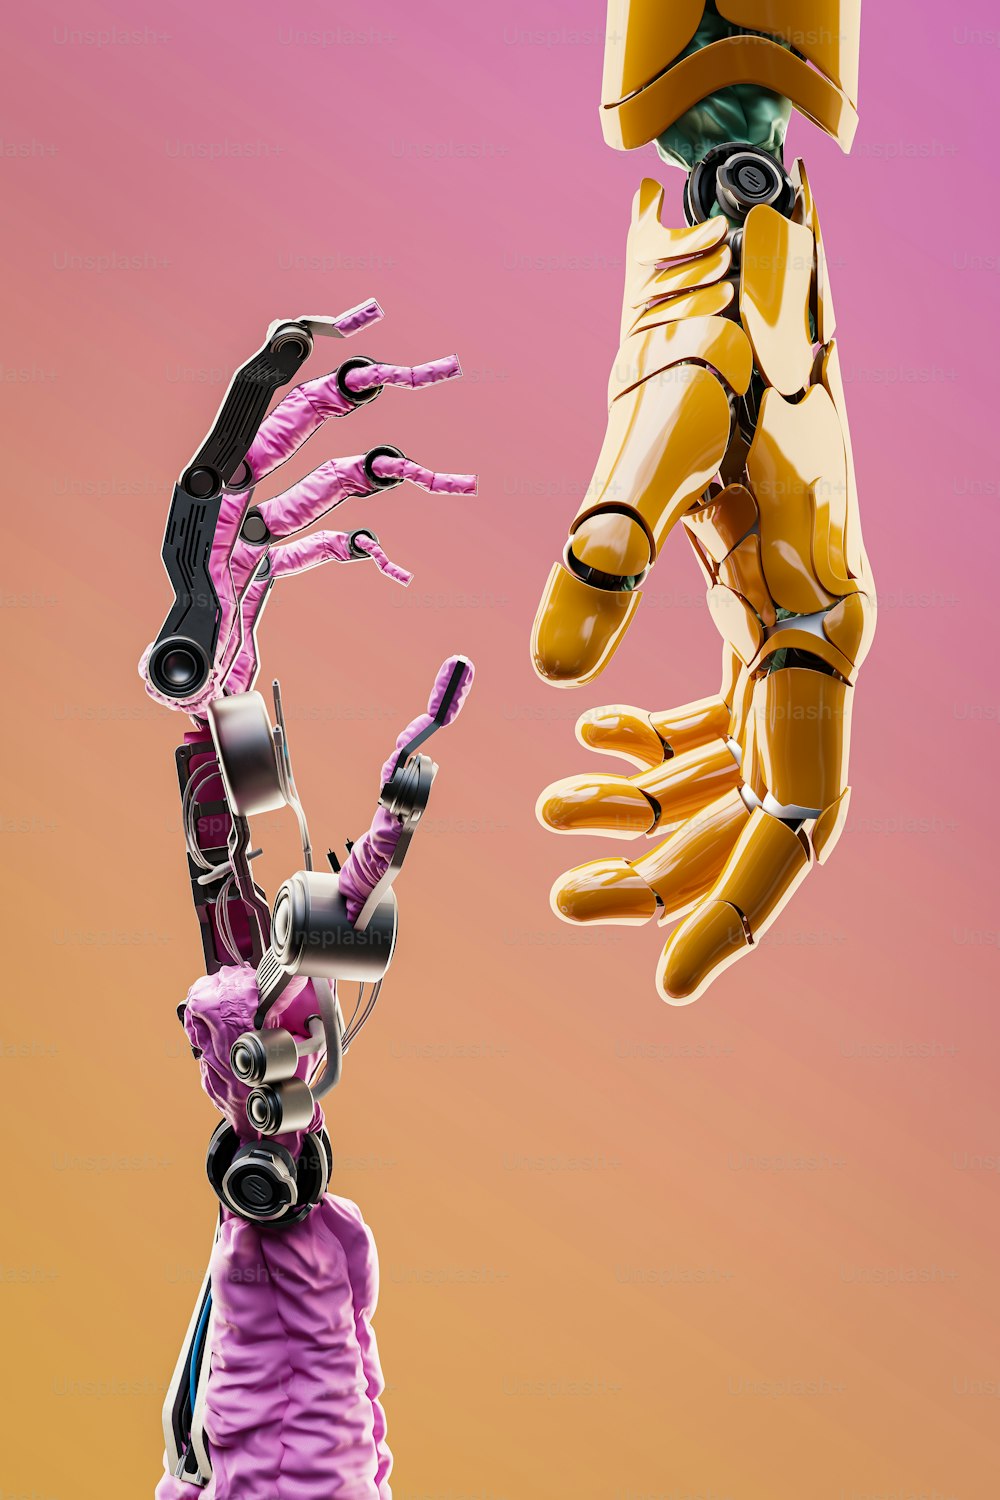 공중에서 인간의 손을 들고 있는 로봇